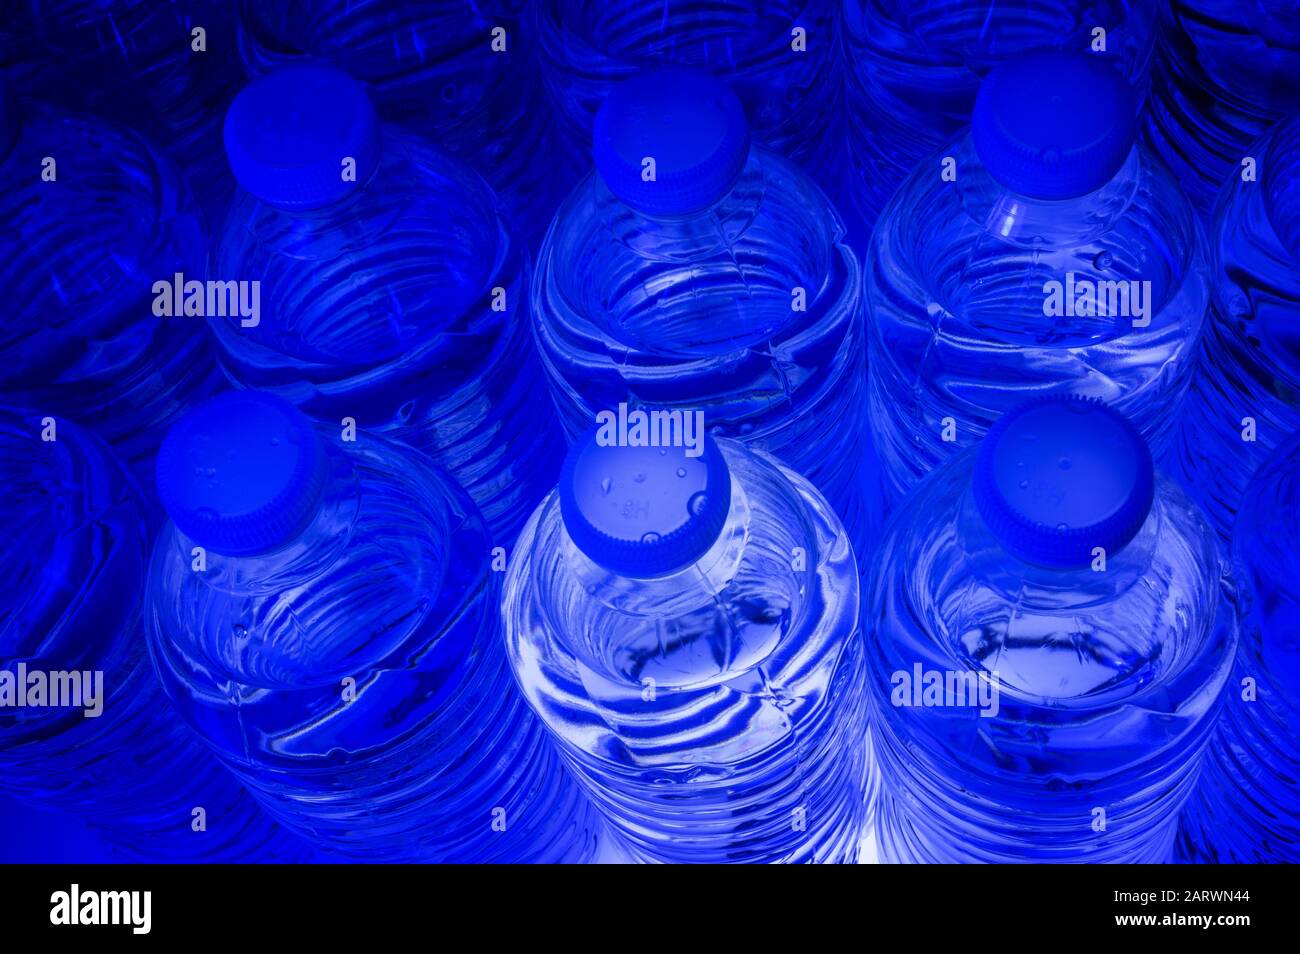 Studio ancora vita immagine di un gruppo di bottiglie di acqua illuminato dal fondo con luce blu Foto Stock